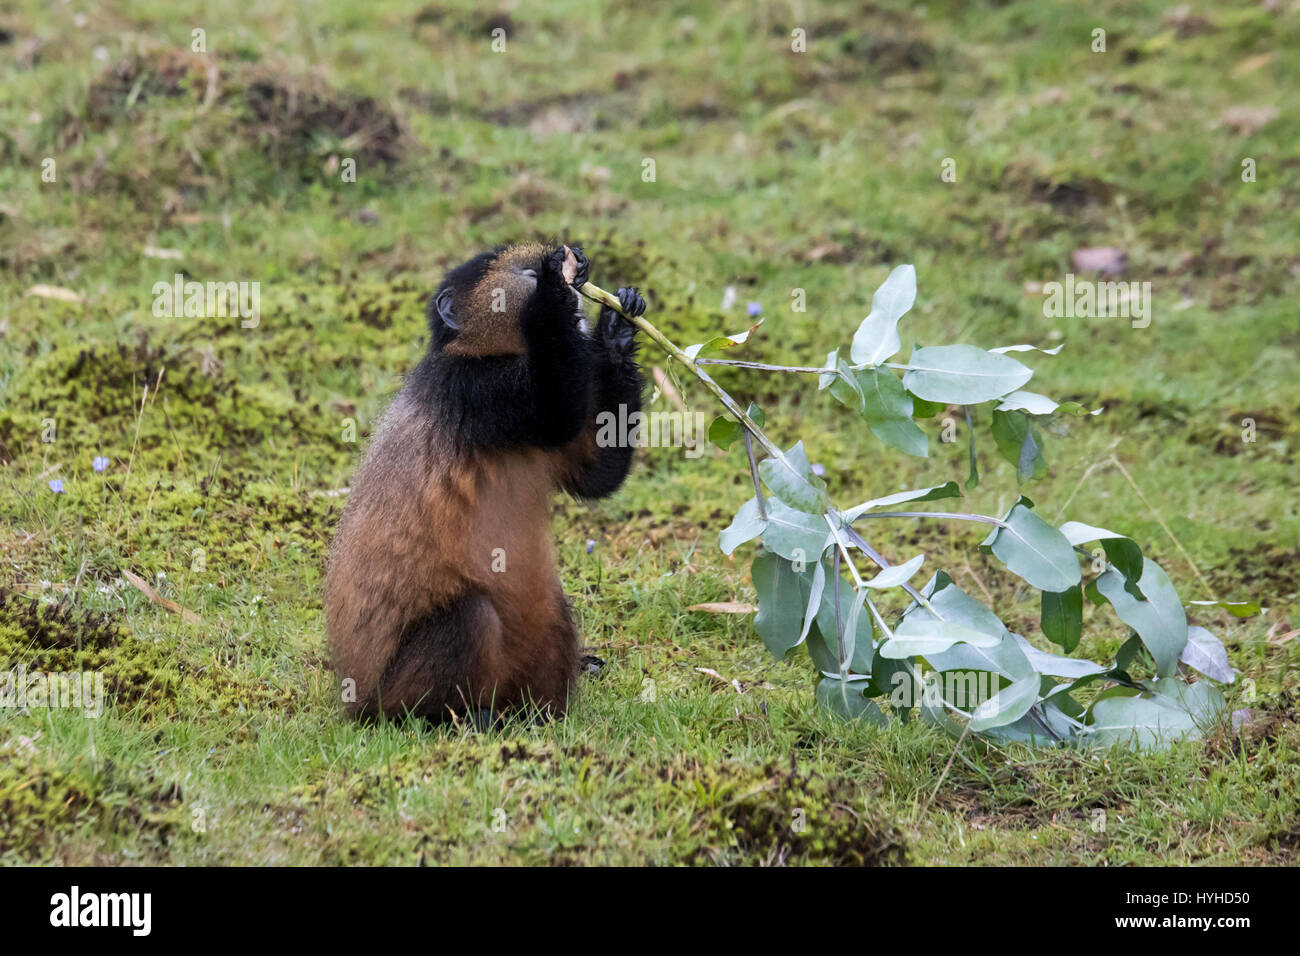 Endangered golden monkey youth in Virunga forest of Volcanoes National Park, Rwanda. Stock Photo